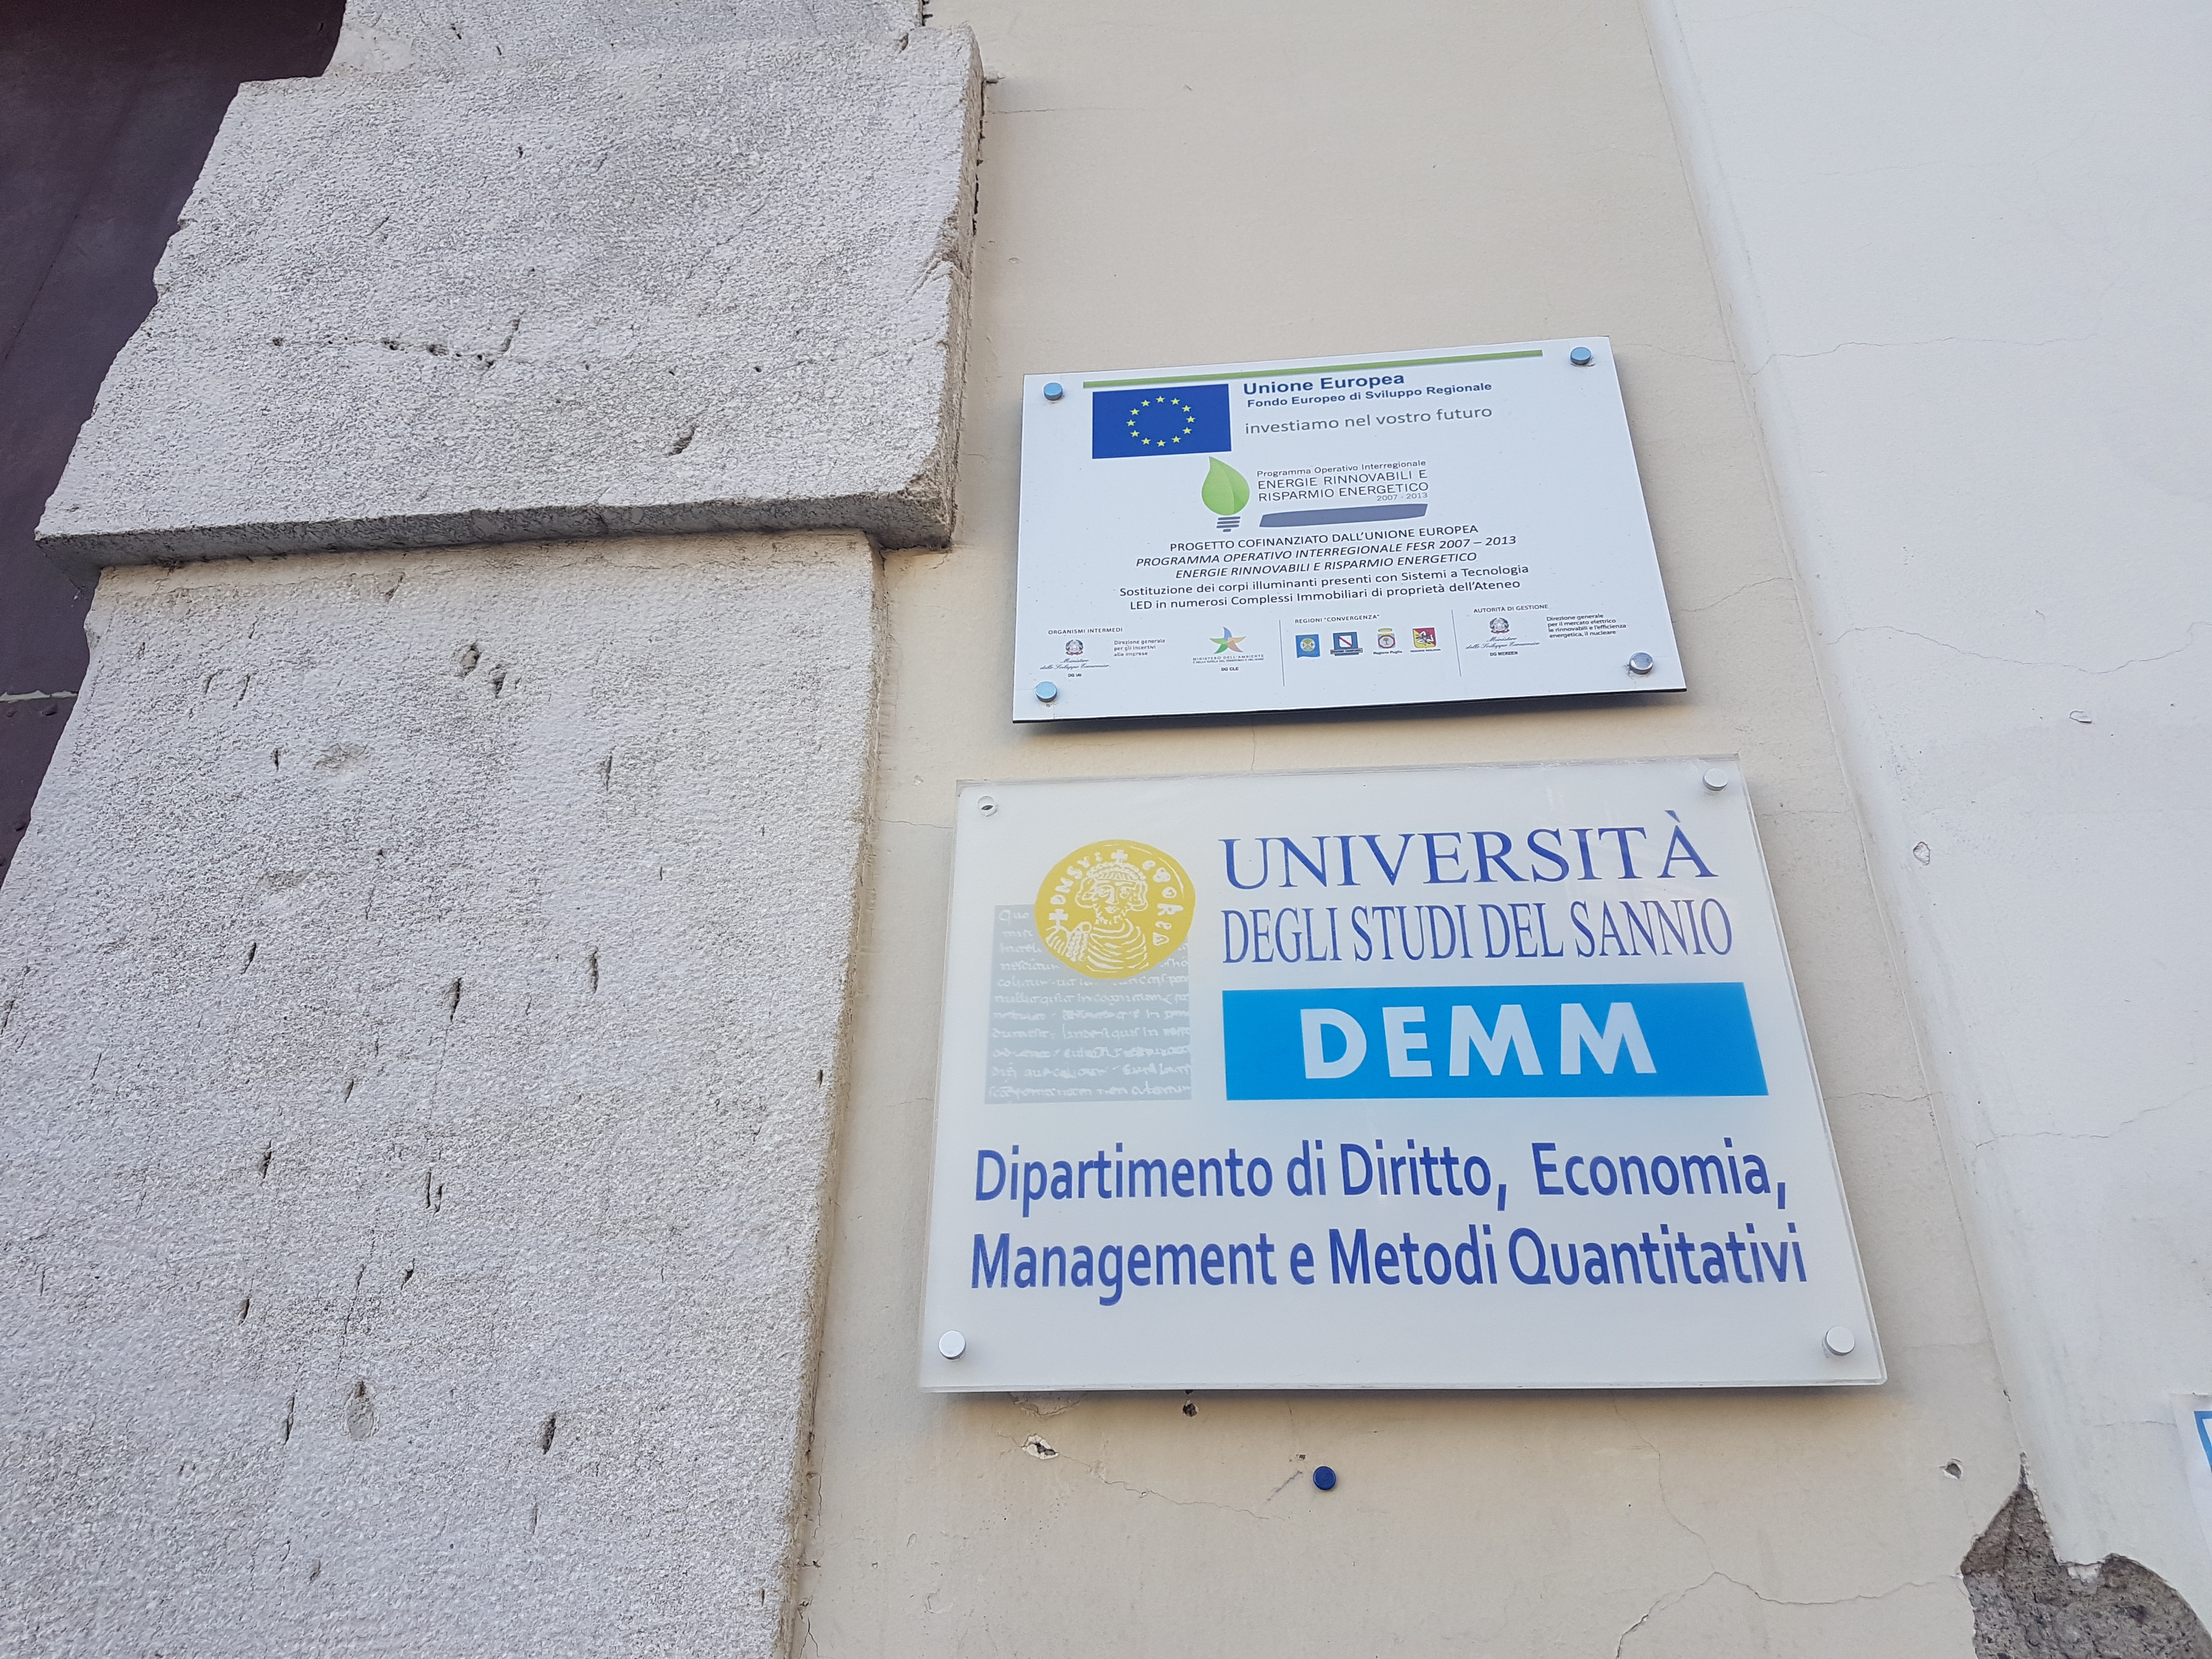 Benevento| Al Demm seminario su “Le istituzioni pubbliche di ricerca, tra autonomia funzionale e performance”